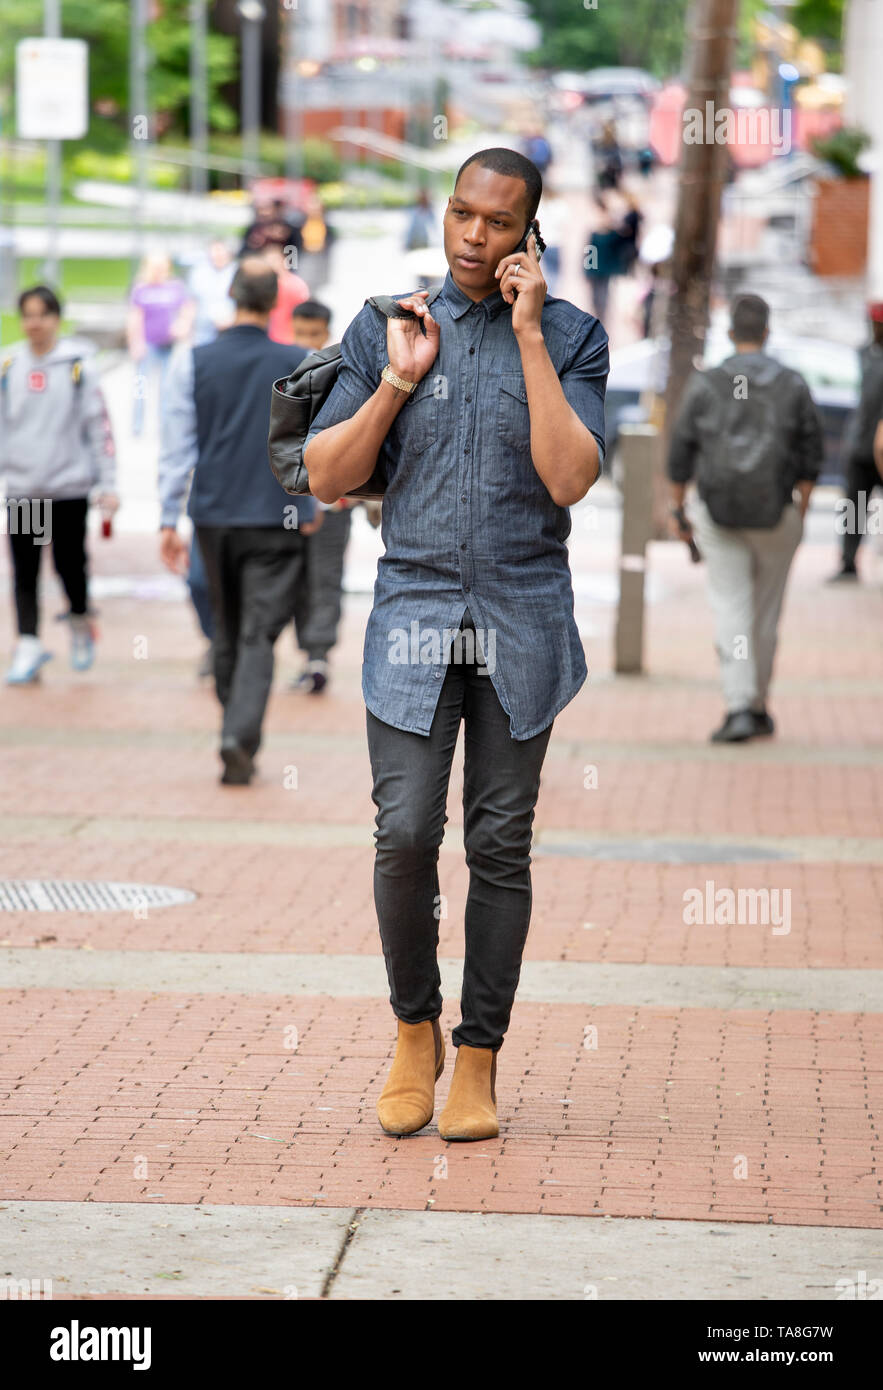 Giovane Africano Americano di Philadelphia, camminando sul Tempio campus universitari sul suo telefono cellulare Foto Stock